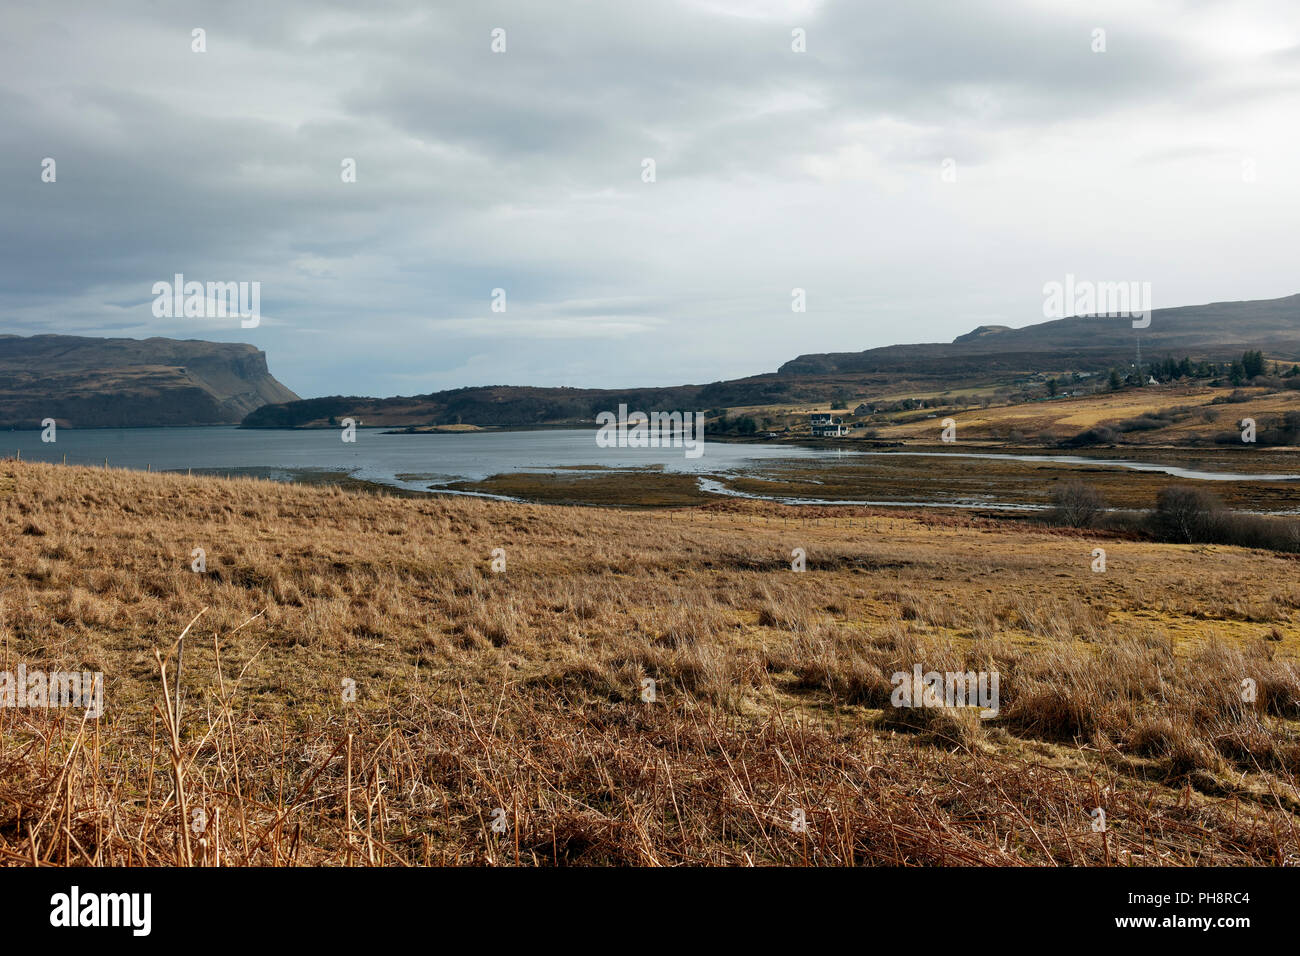 Immagine di panorama preso in Scozia Foto Stock